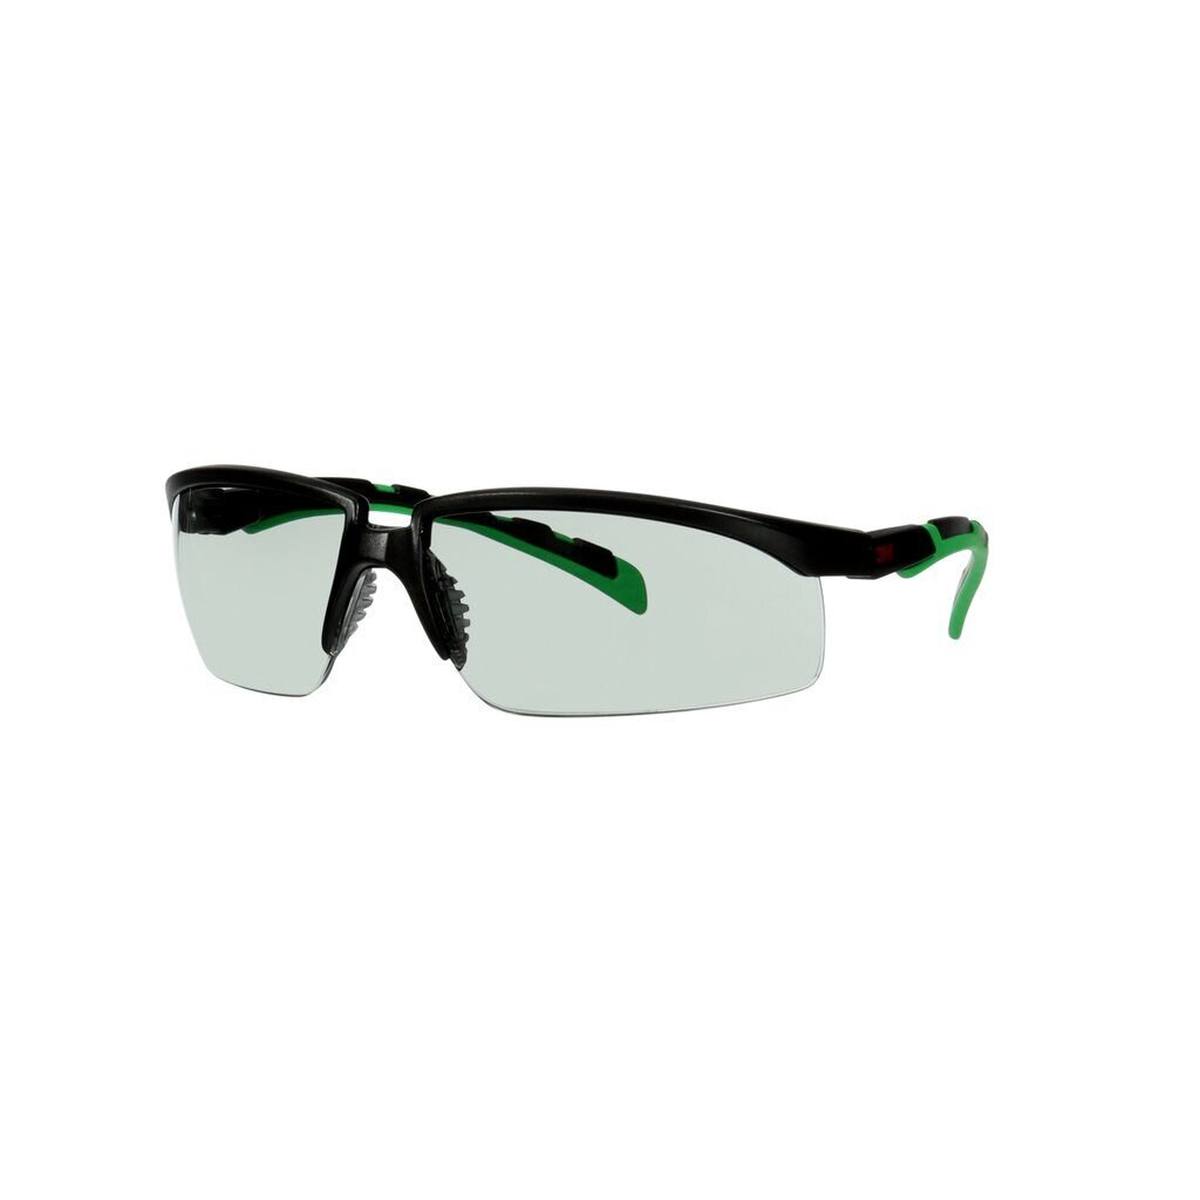 3M Solus 2000 lunettes de protection, monture noire/verte, traitement anti-rayures + (K), écran gris IR 1,7, S2017ASP-BLK